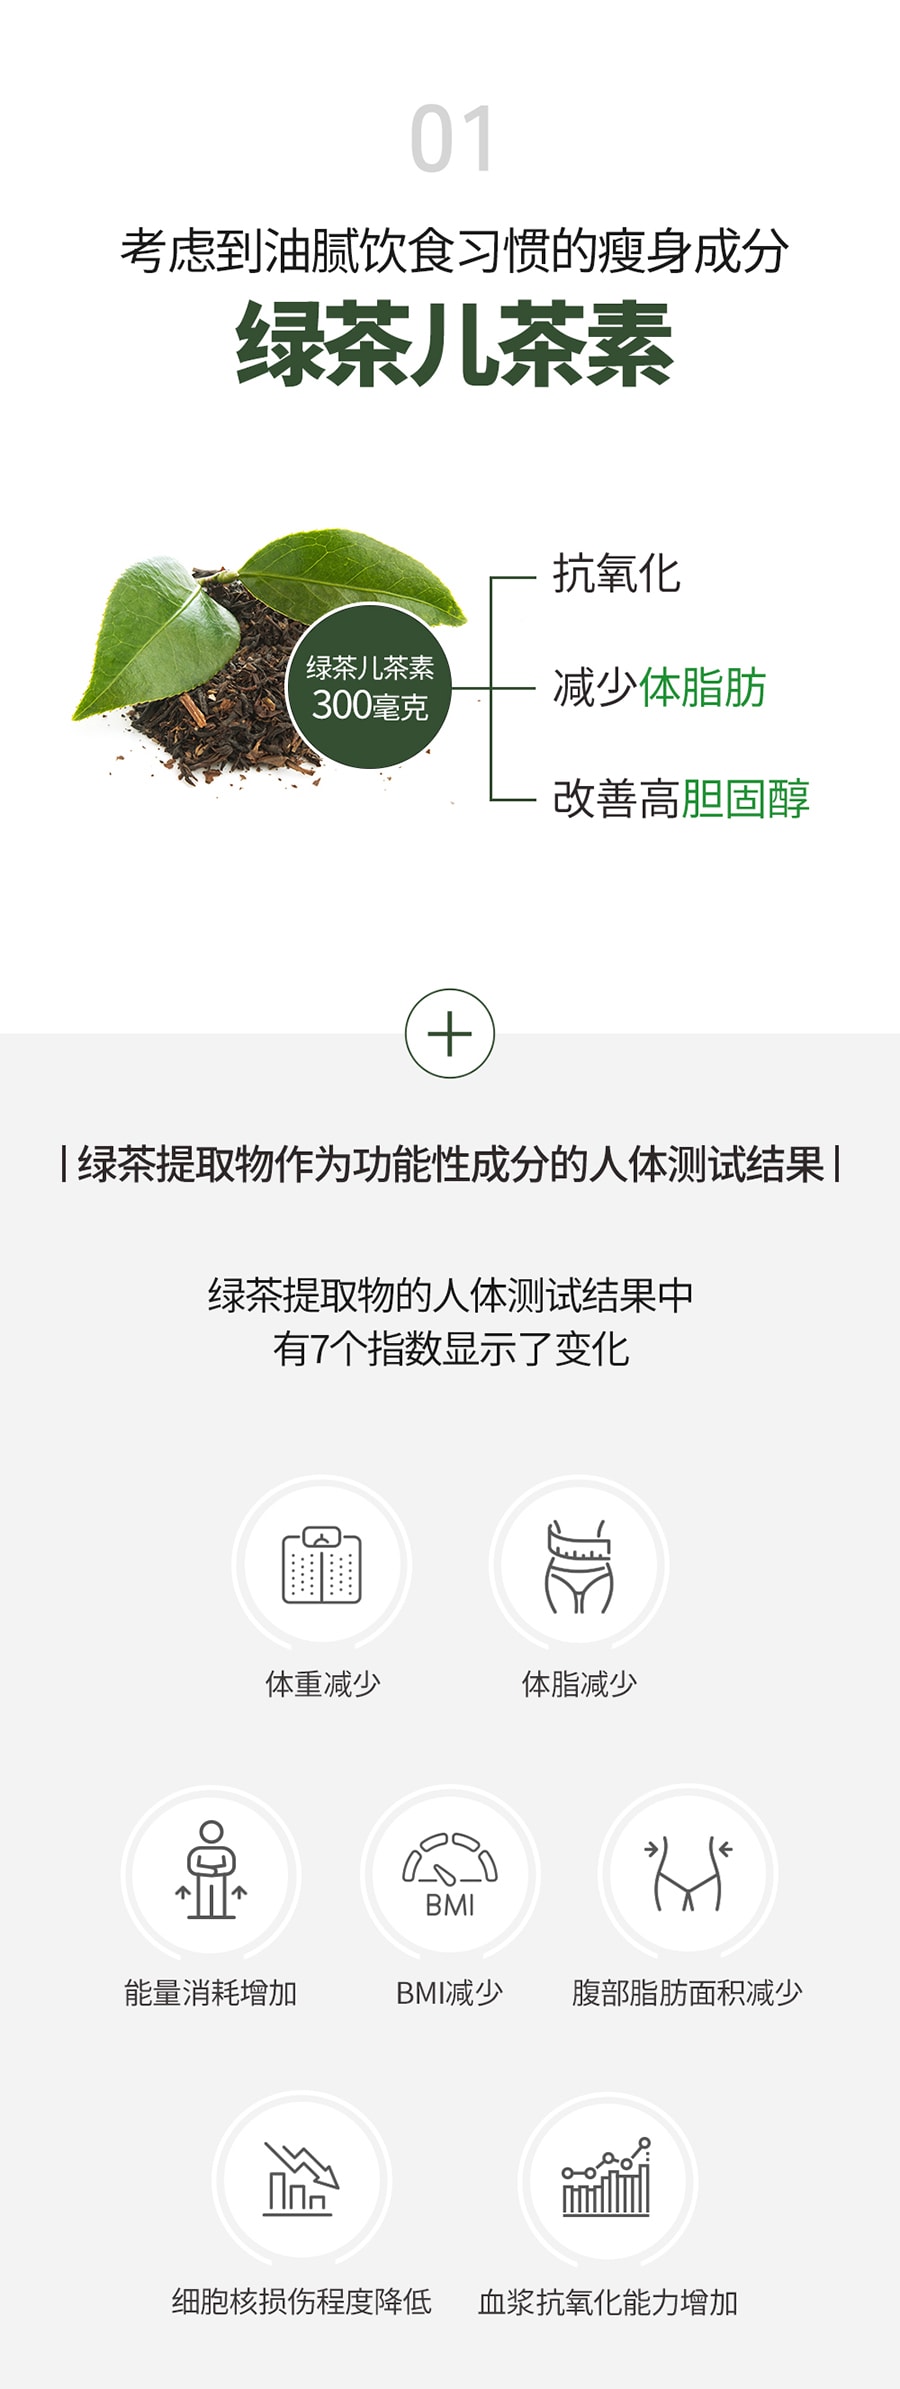 韩国 [Green Monster] 绿茶儿茶素+ 第3季 瘦身消化健康补充剂 28粒